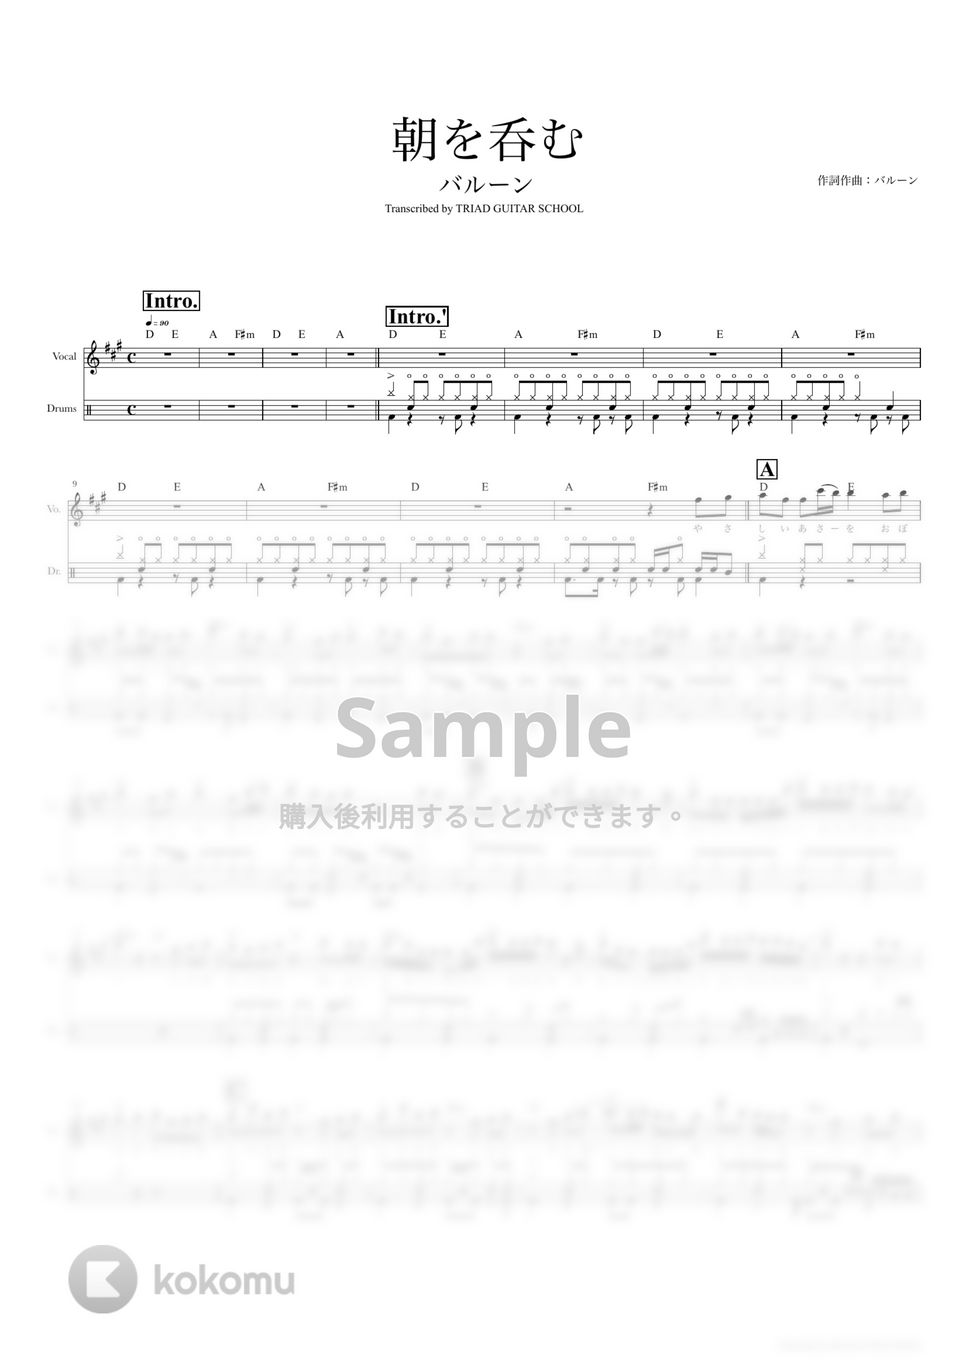 バルーン - 朝を呑む (ドラムスコア・歌詞・コード付き) by TRIAD GUITAR SCHOOL